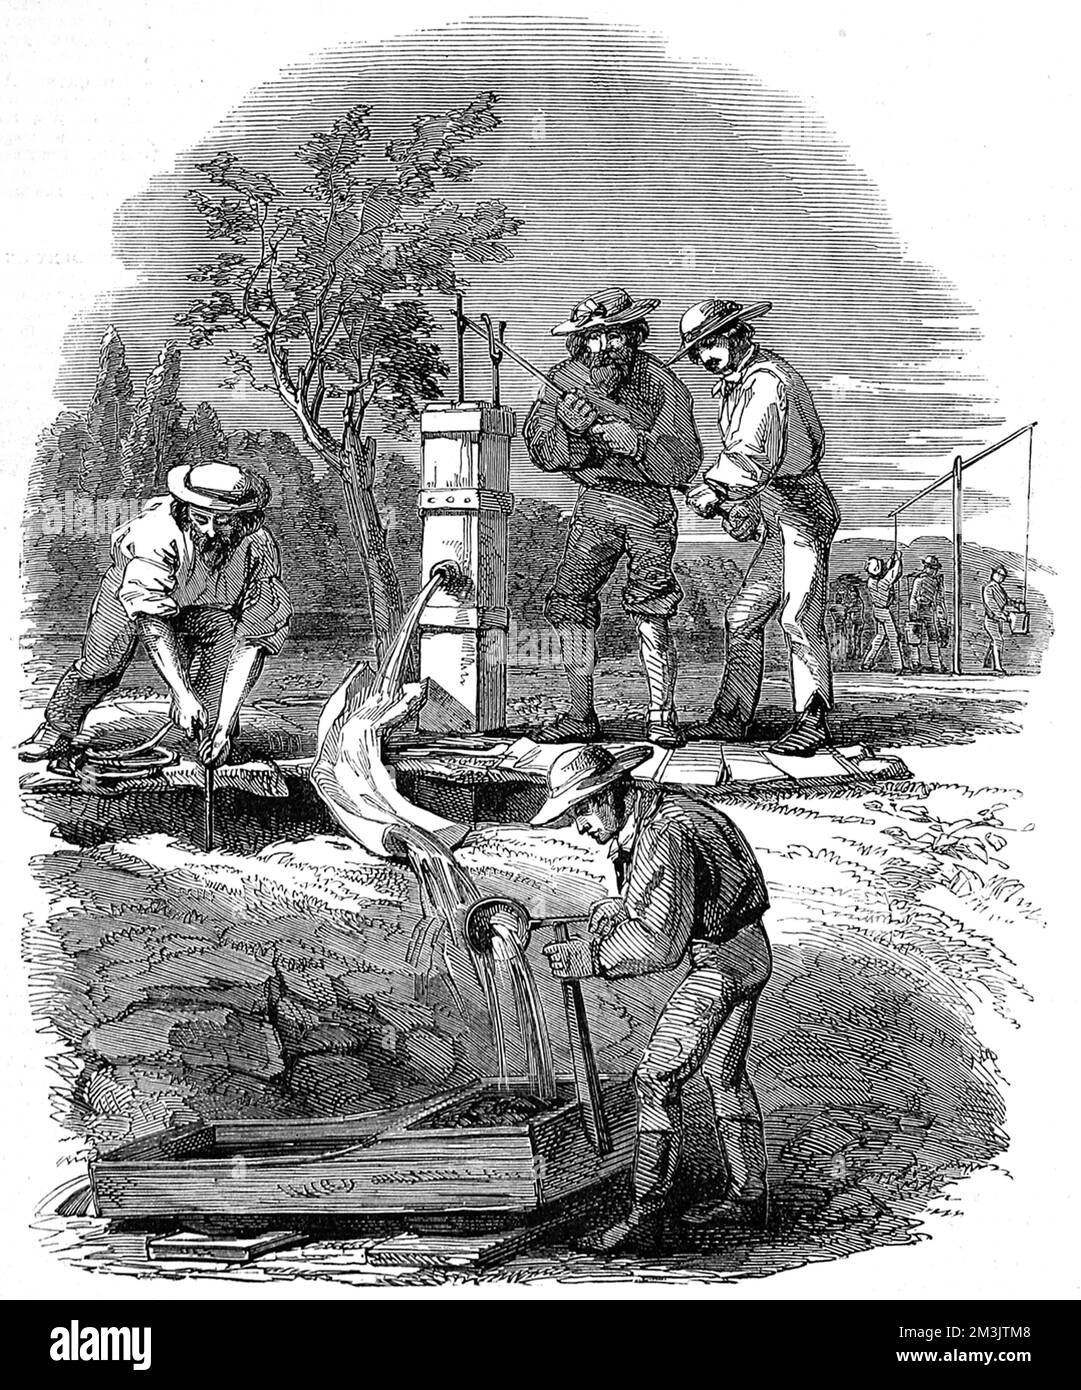 Lit de rivière sifting sur la rivière Turon, un croquis des champs aurifères de Turon, Nouvelle-Galles du Sud. La pompe est abaissée à 12 pieds de la surface de la rivière et l'eau est utilisée pour laver la terre dans le berceaux. Il s'agit d'un dispositif d'économie de main-d'œuvre permettant aux creuseurs de produire de grandes quantités d'or Date : 21st août 1852 Banque D'Images